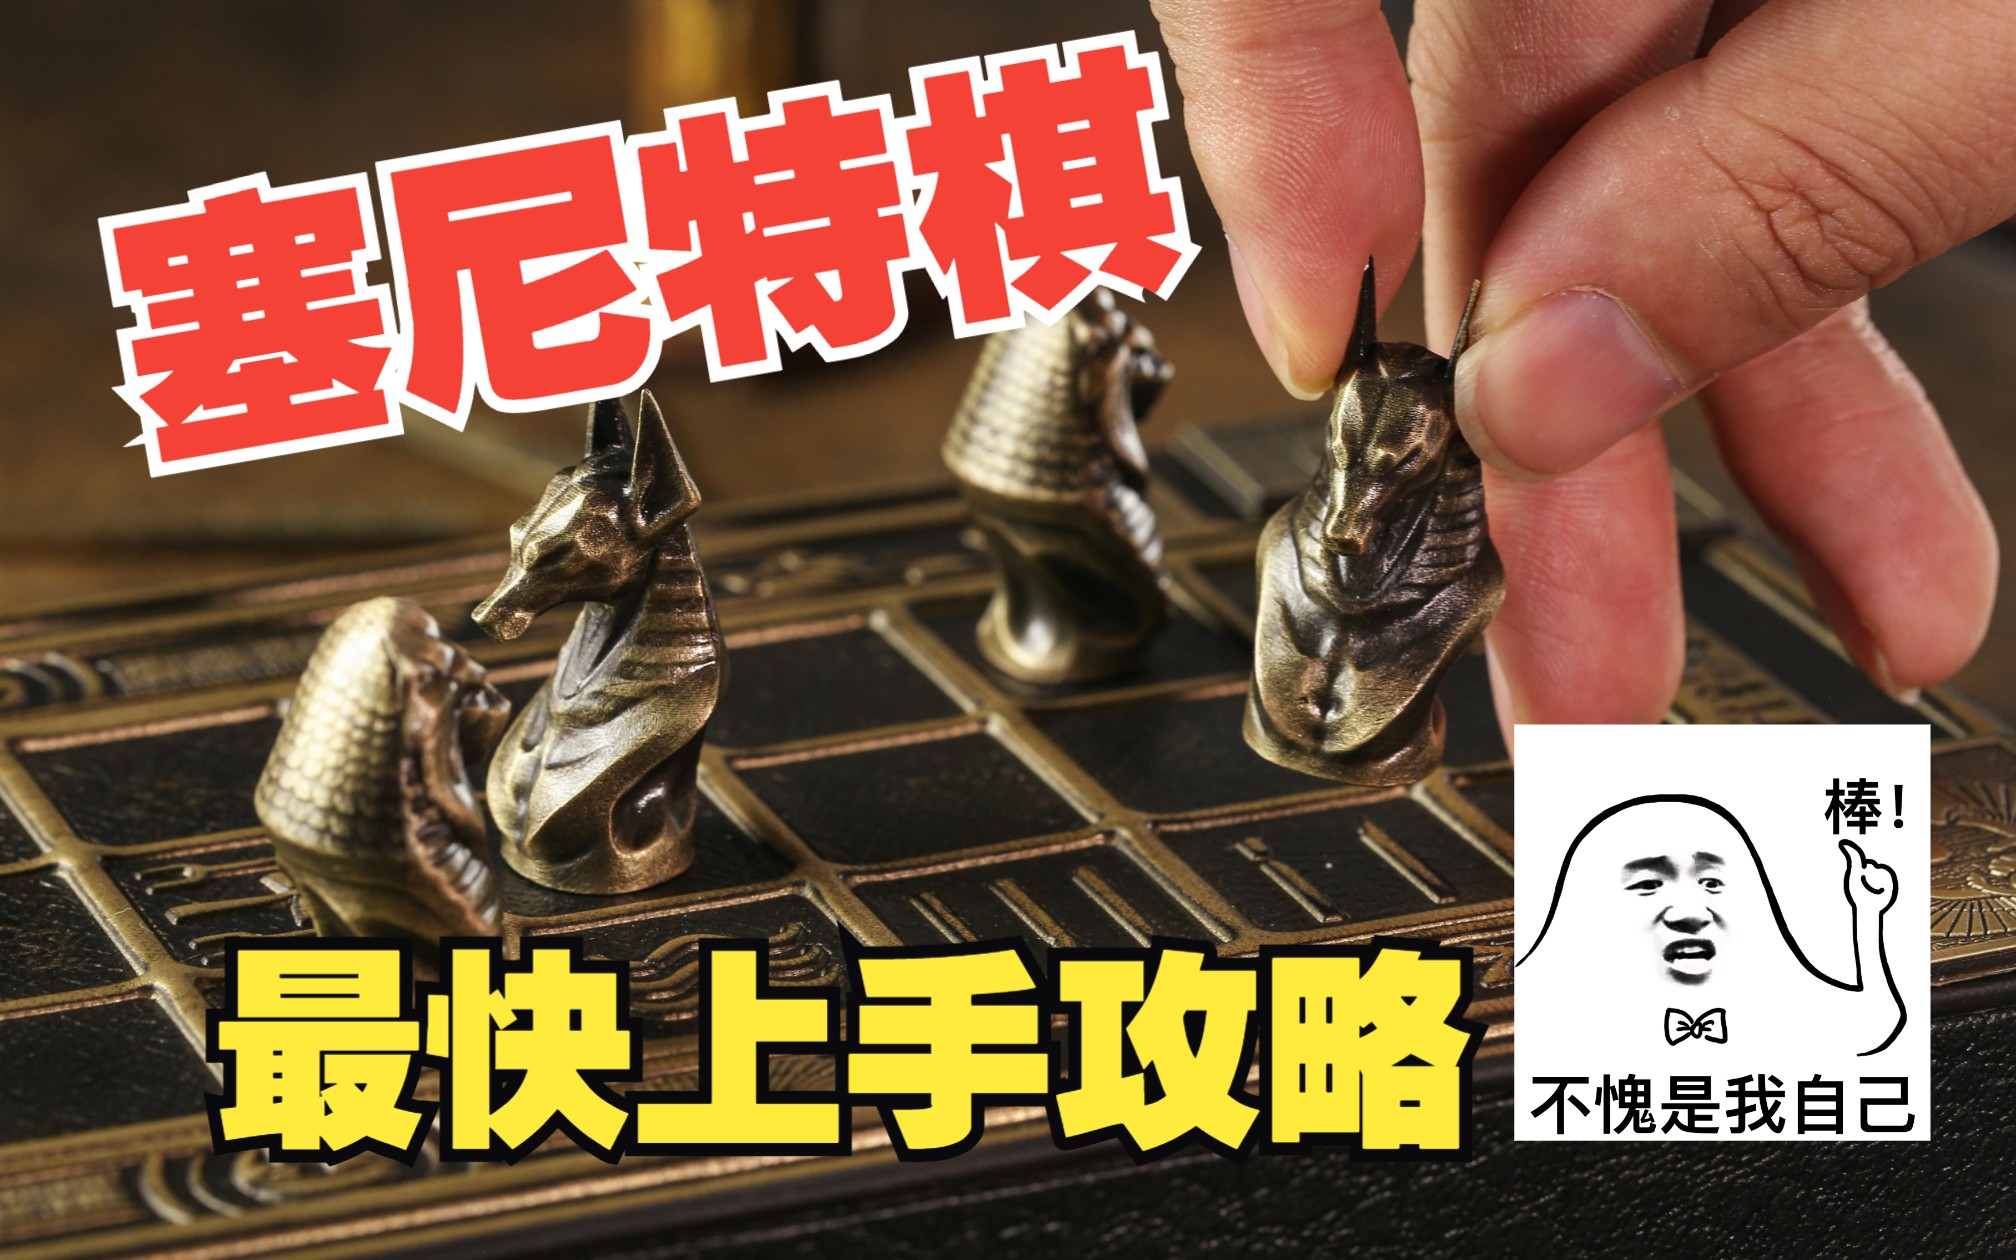 【墨鱼游戏】世界经典抽象棋——《塞尼特棋》展示及玩法讲解